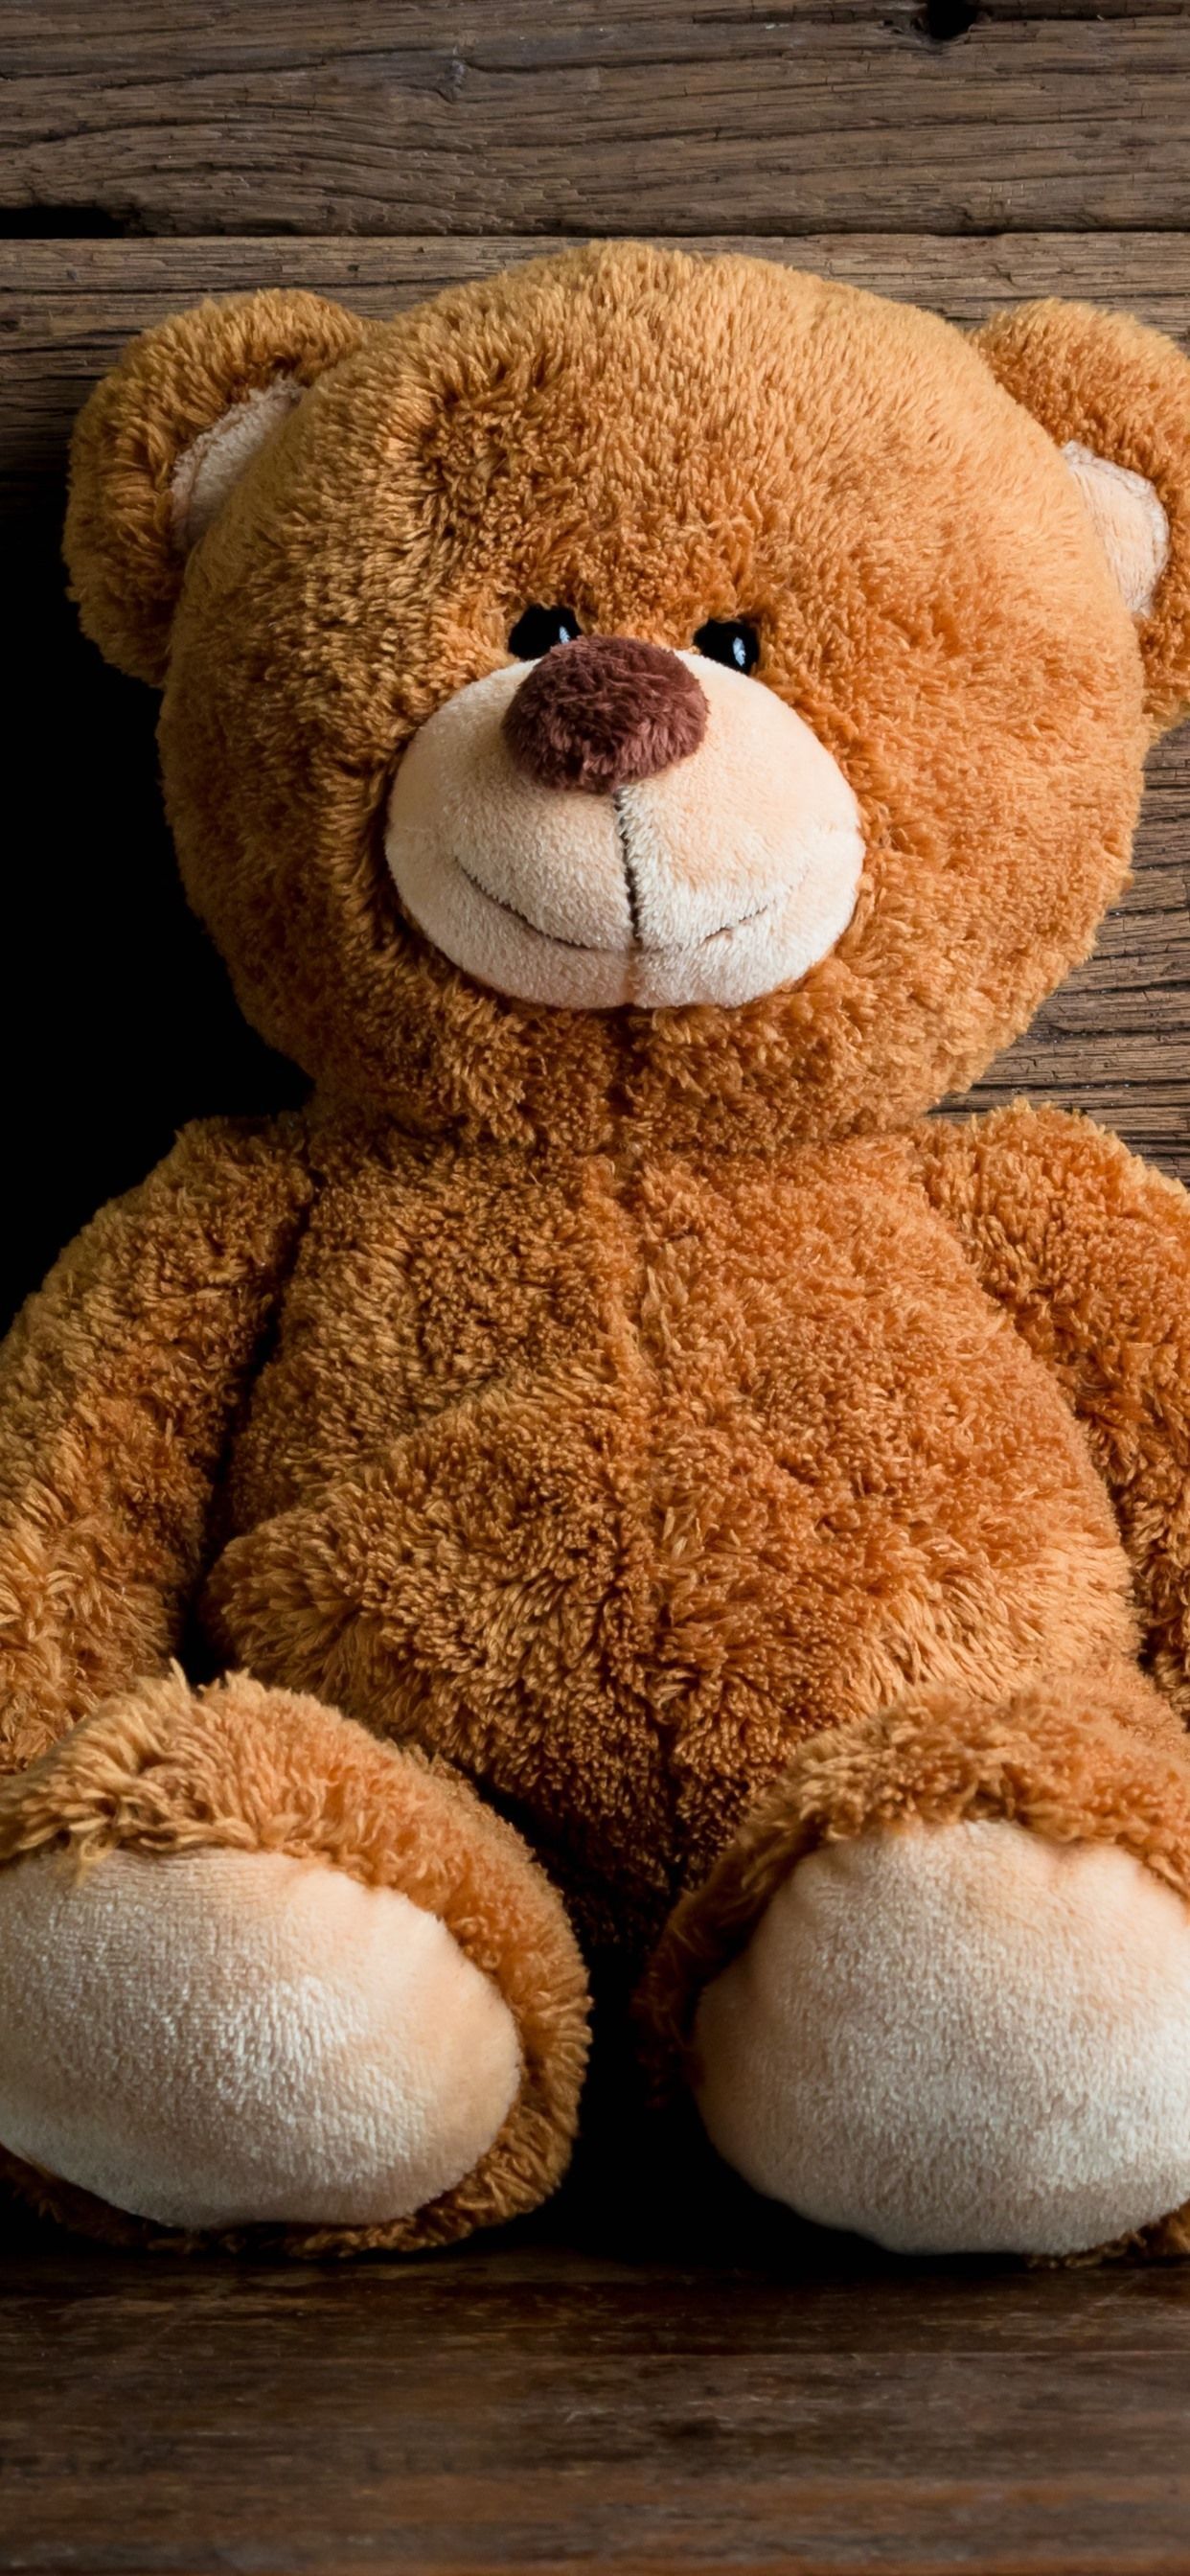 A brown teddy bear sitting on the floor - Teddy bear